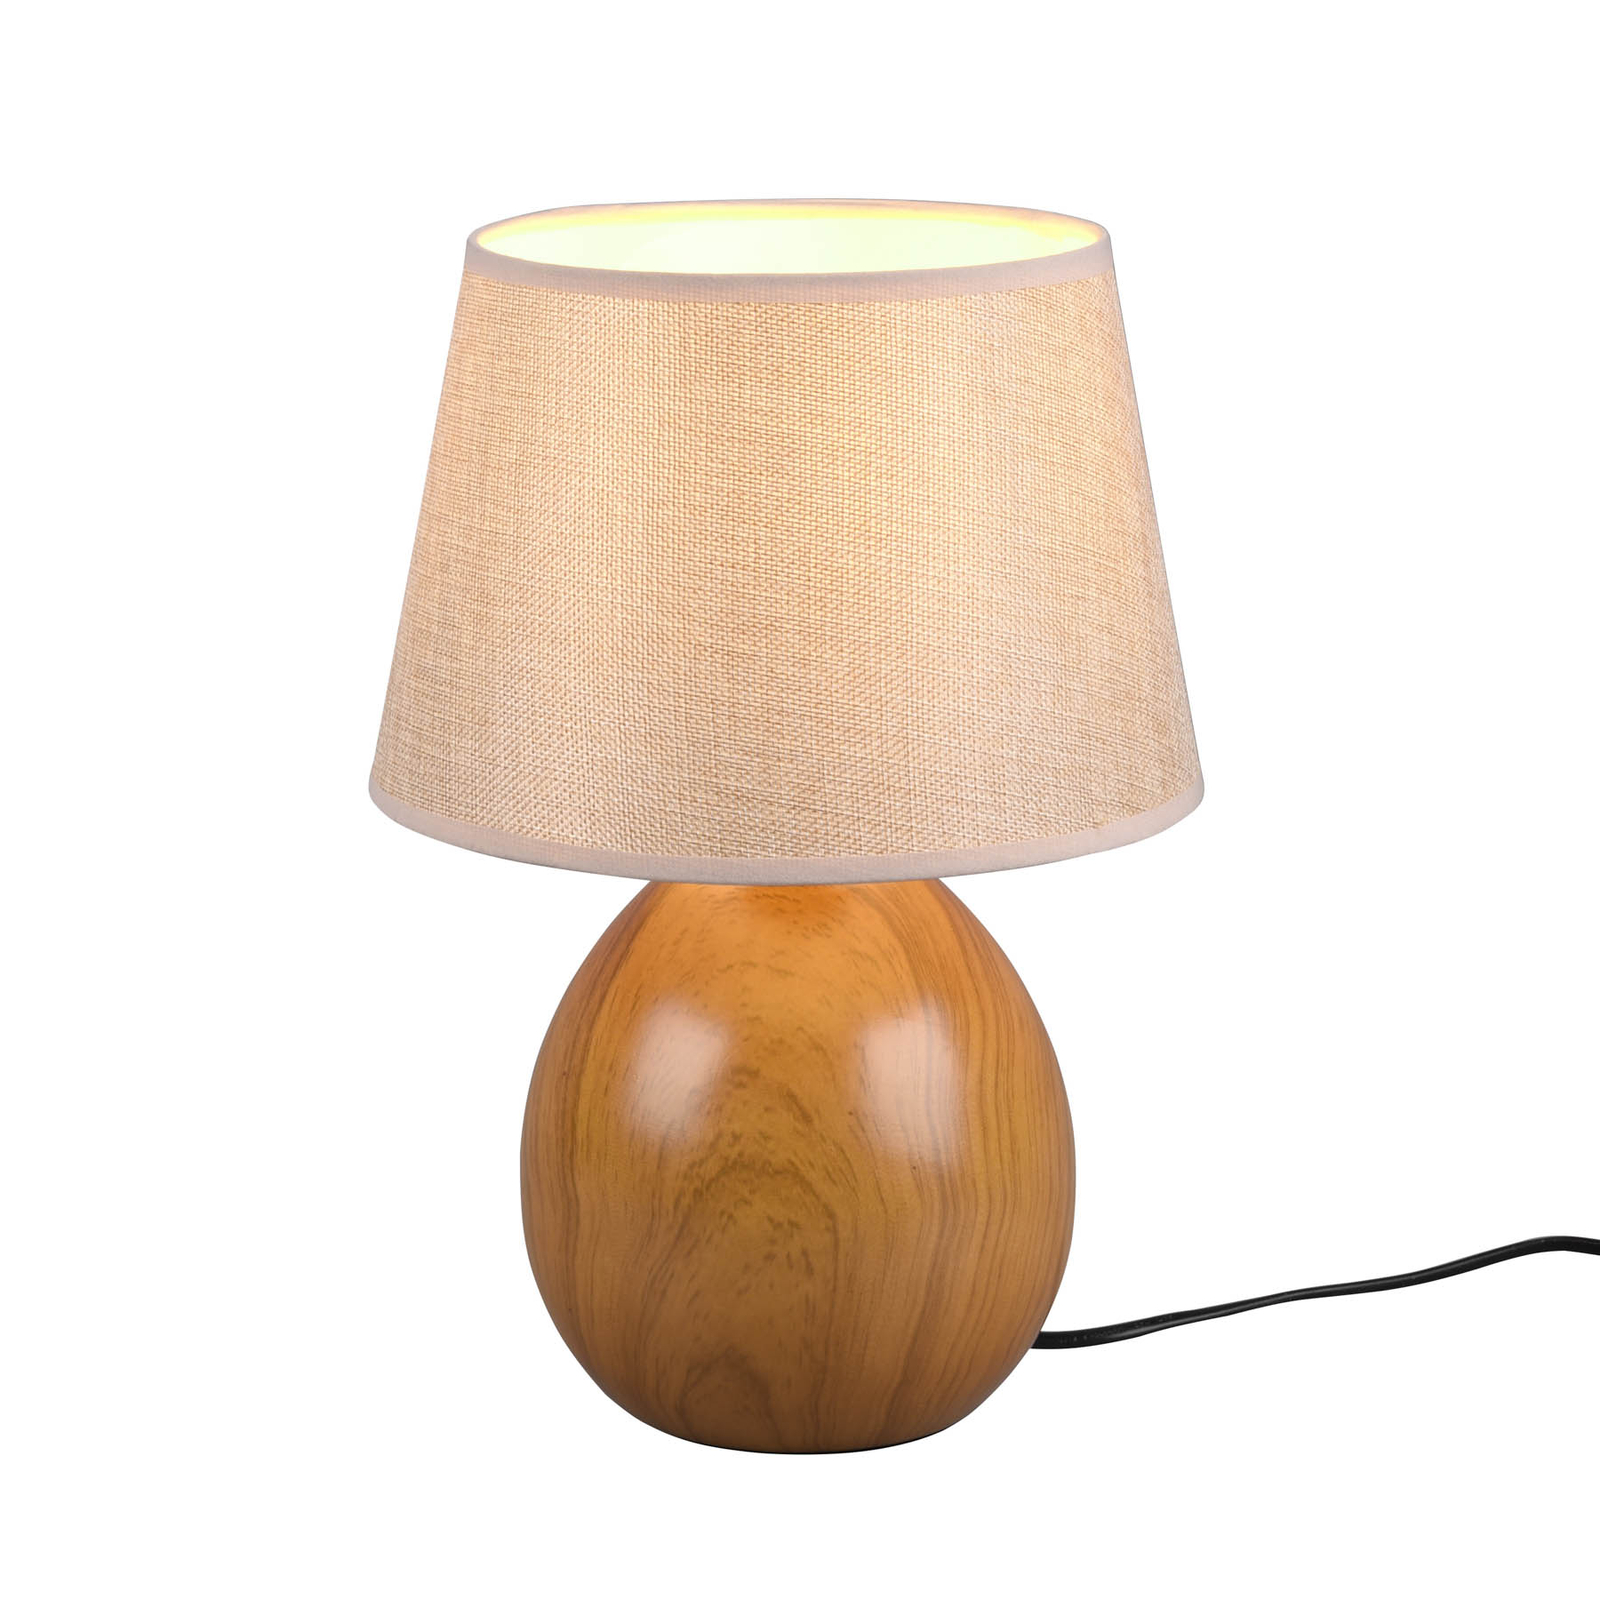 Настолна лампа Loxur, височина 35 см, бежов цвят/вид дърво